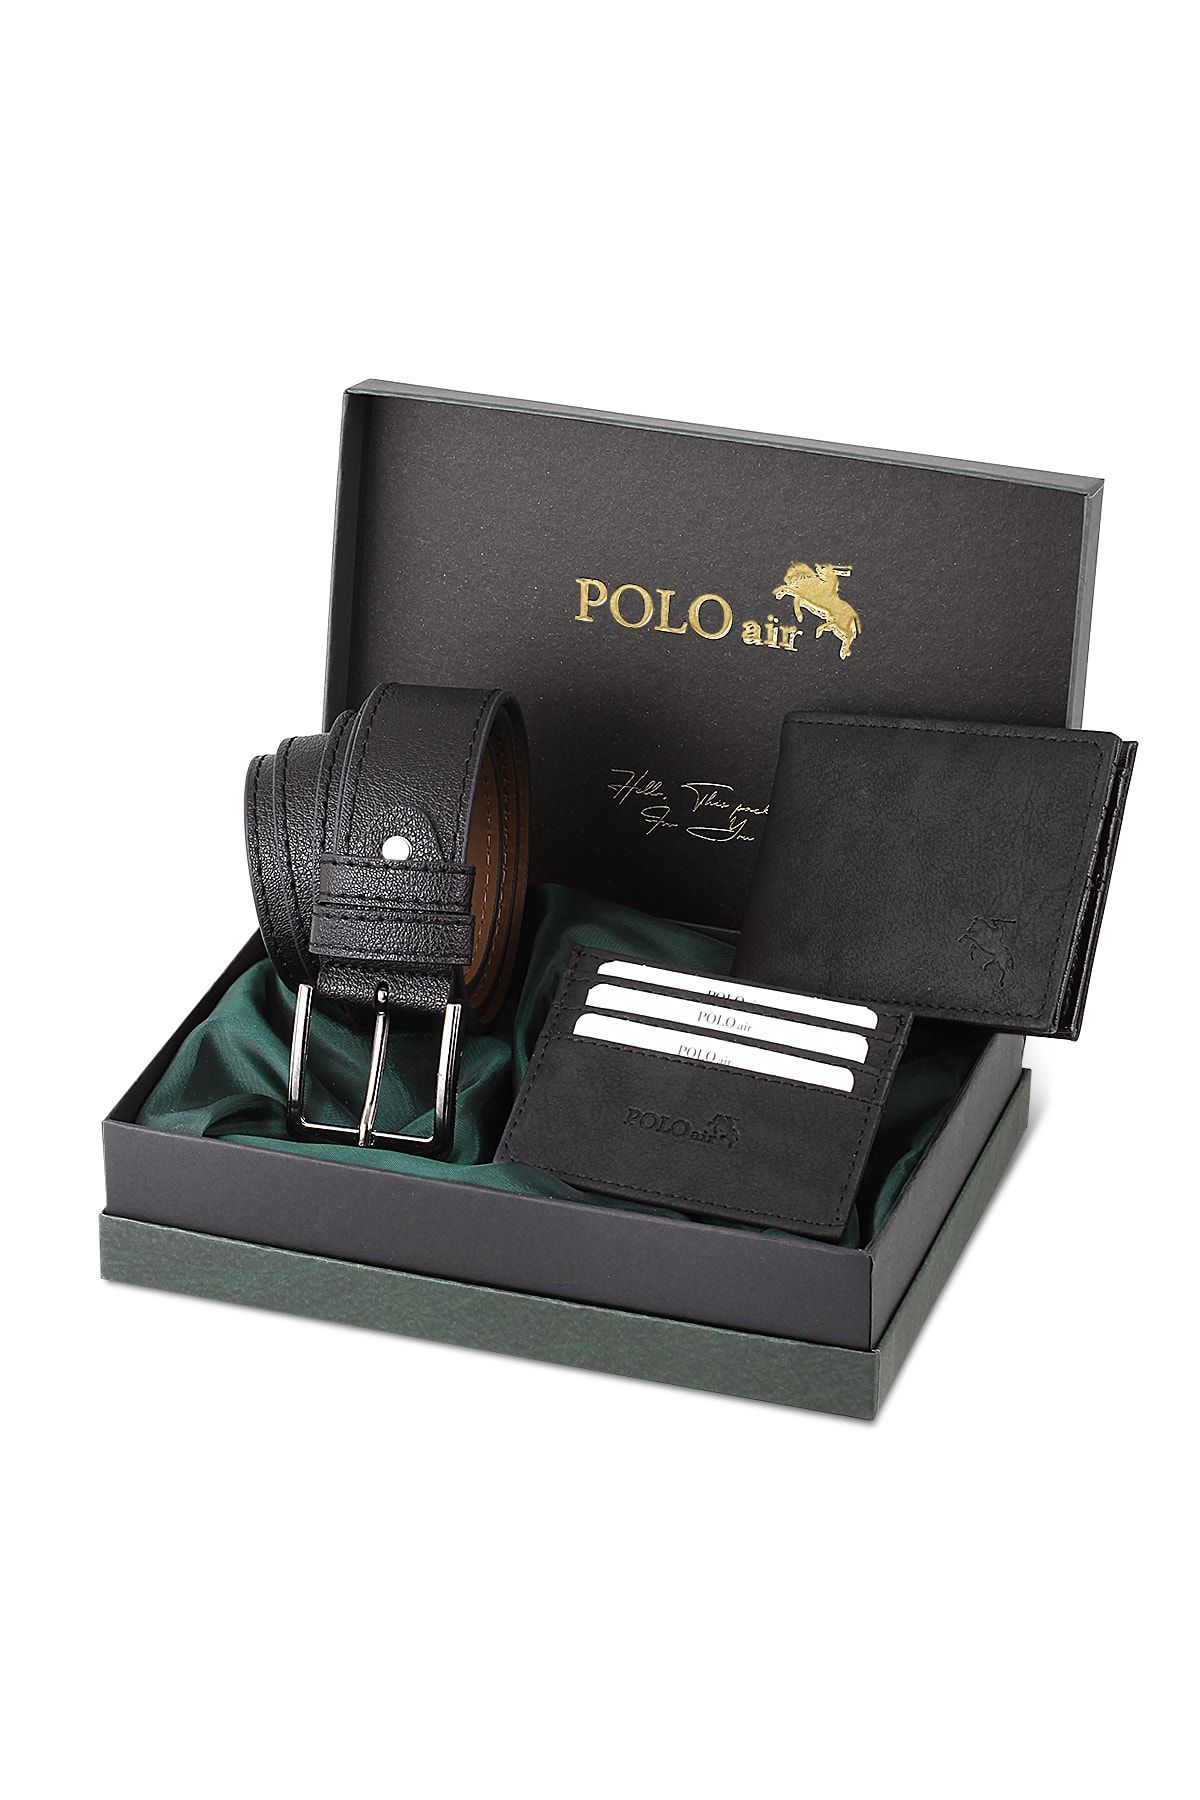 polo air Kemer Cüzdan Kartlık Hediyelik Kutusunda Siyah Set